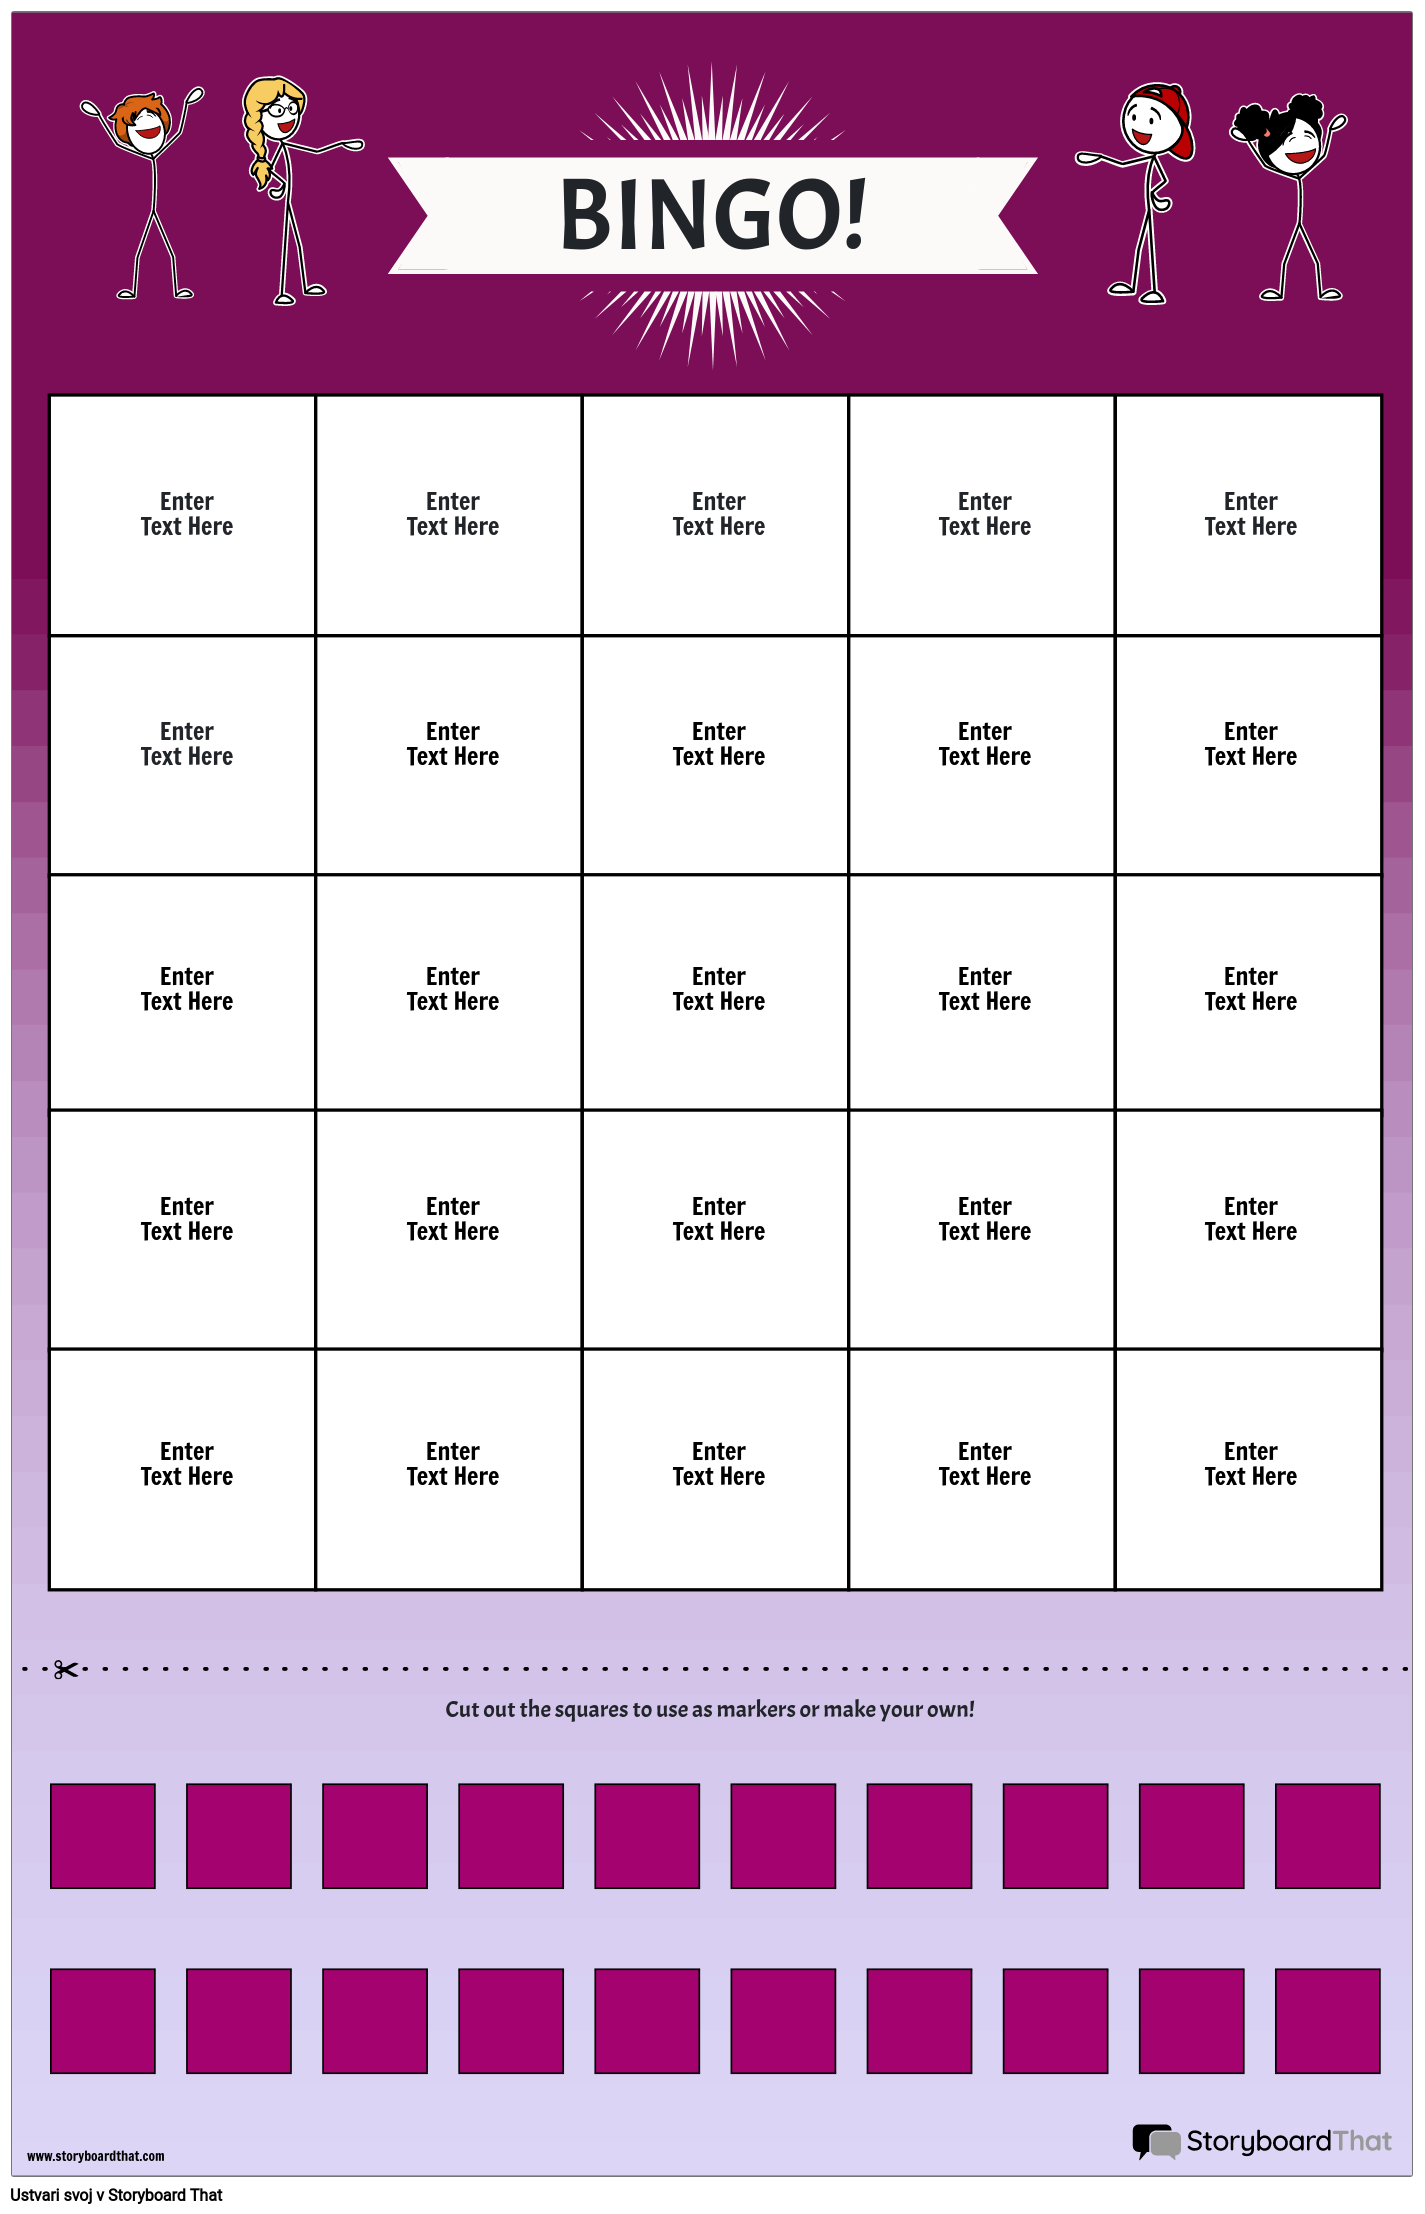 bingo-game-board-storyboard-par-sl-examples